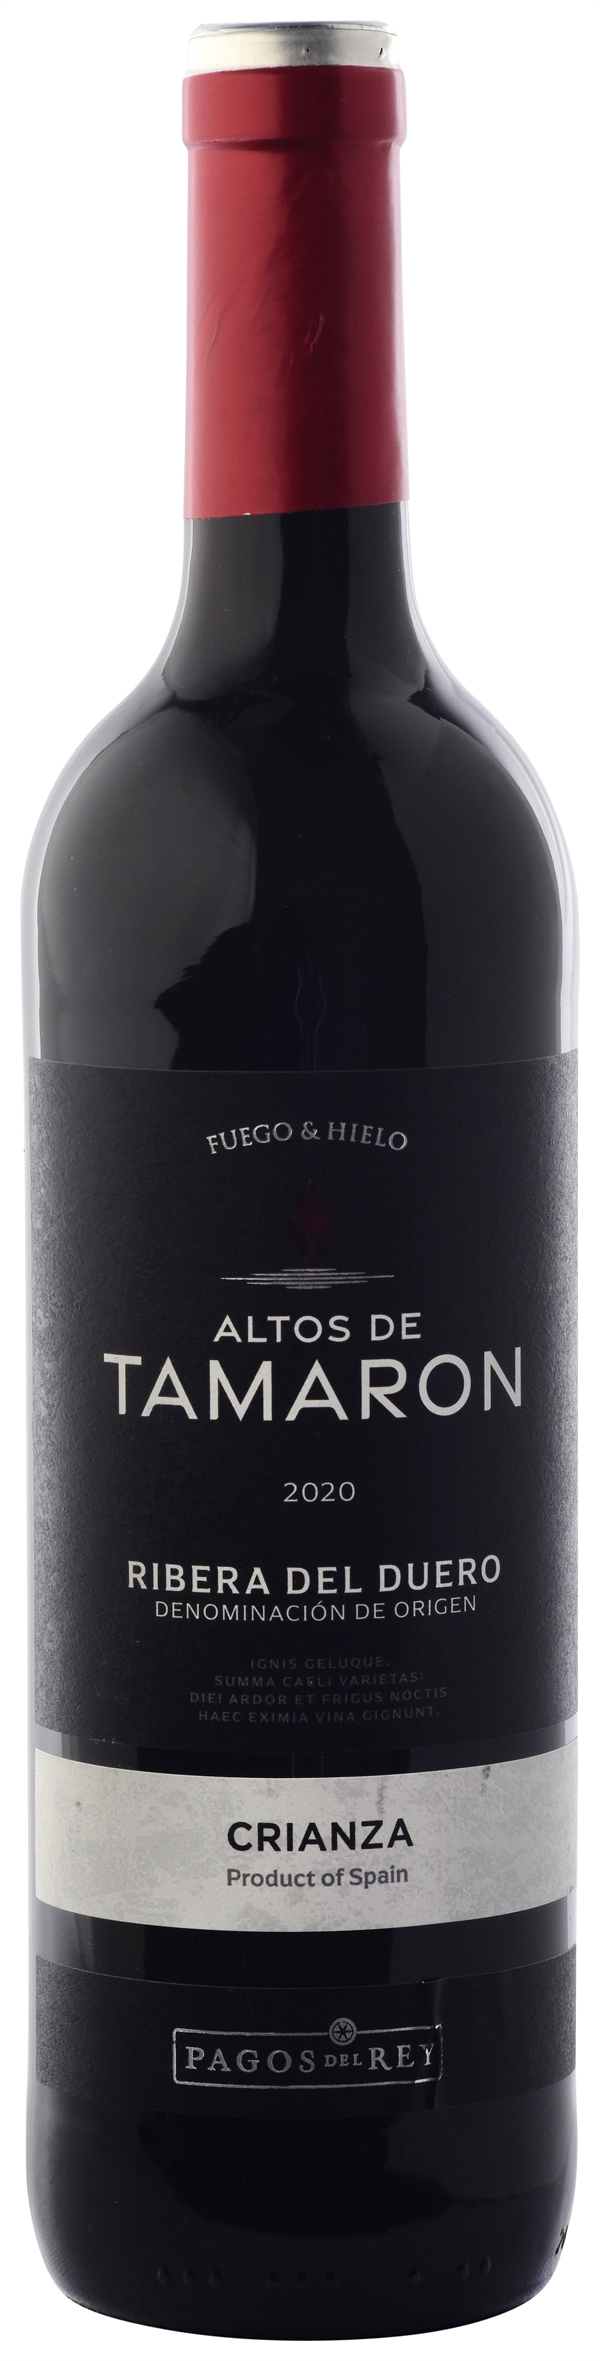 ALTOS DE TAMARÓN | opiniones 2020: OCU vino CRIANZA